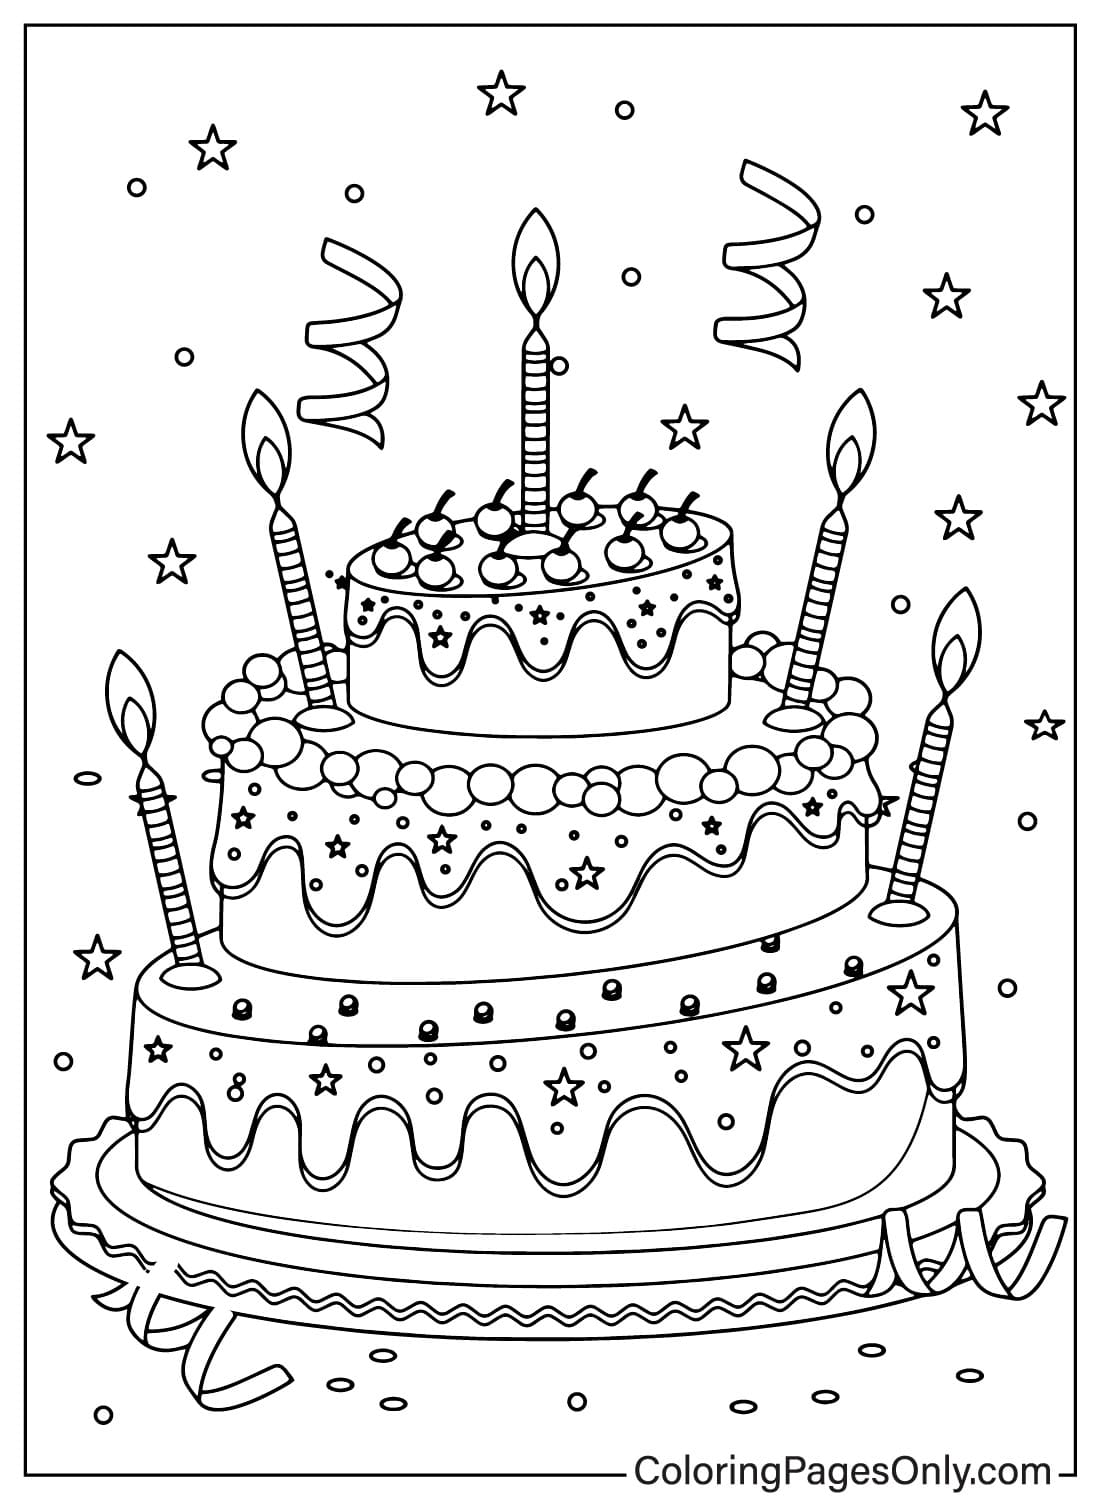 Раскраска Торт ко дню рождения из торта ко дню рождения